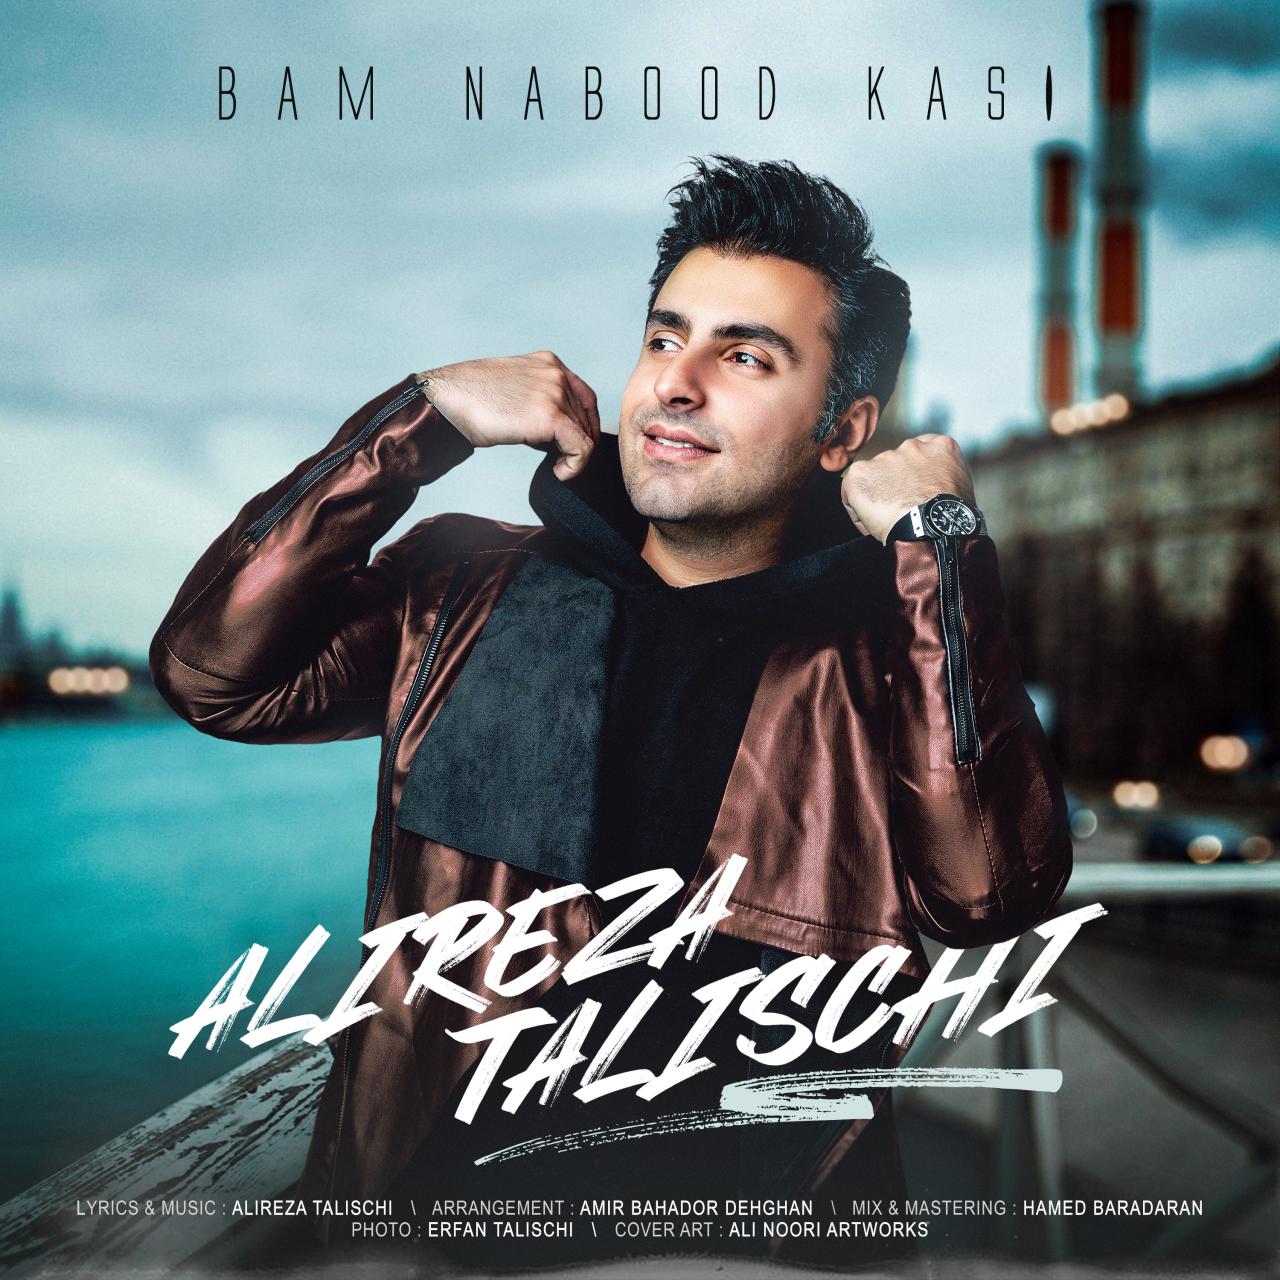  دانلود آهنگ جدید علیرضا طلیسچی - بام نبود کسی | Download New Music By Alireza Talischi - Bam Nabood Kasi